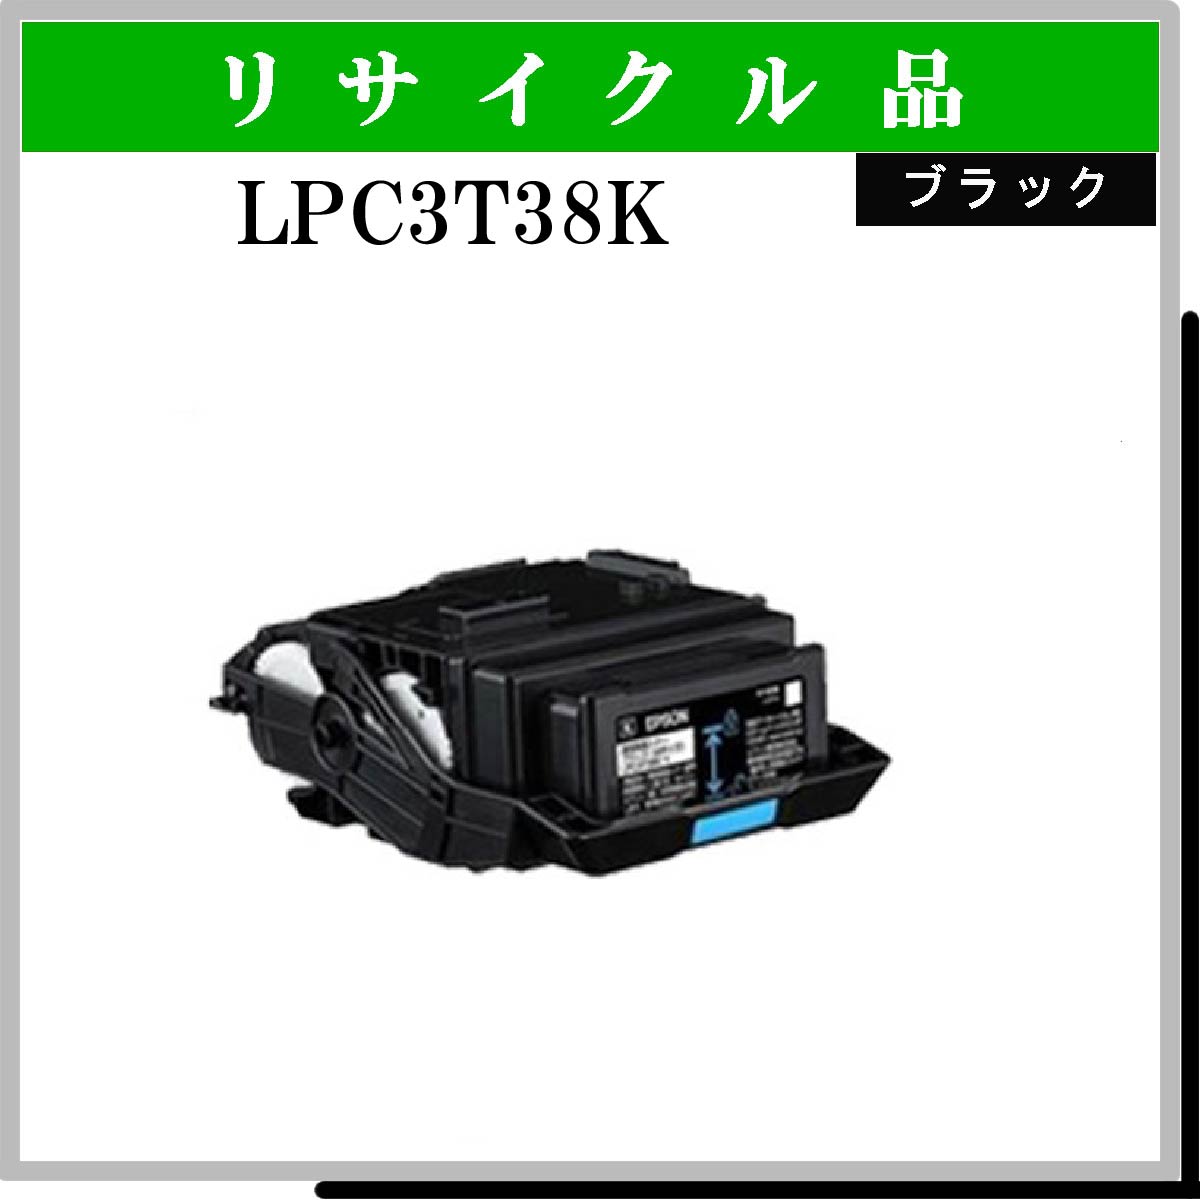 LPC3T38K